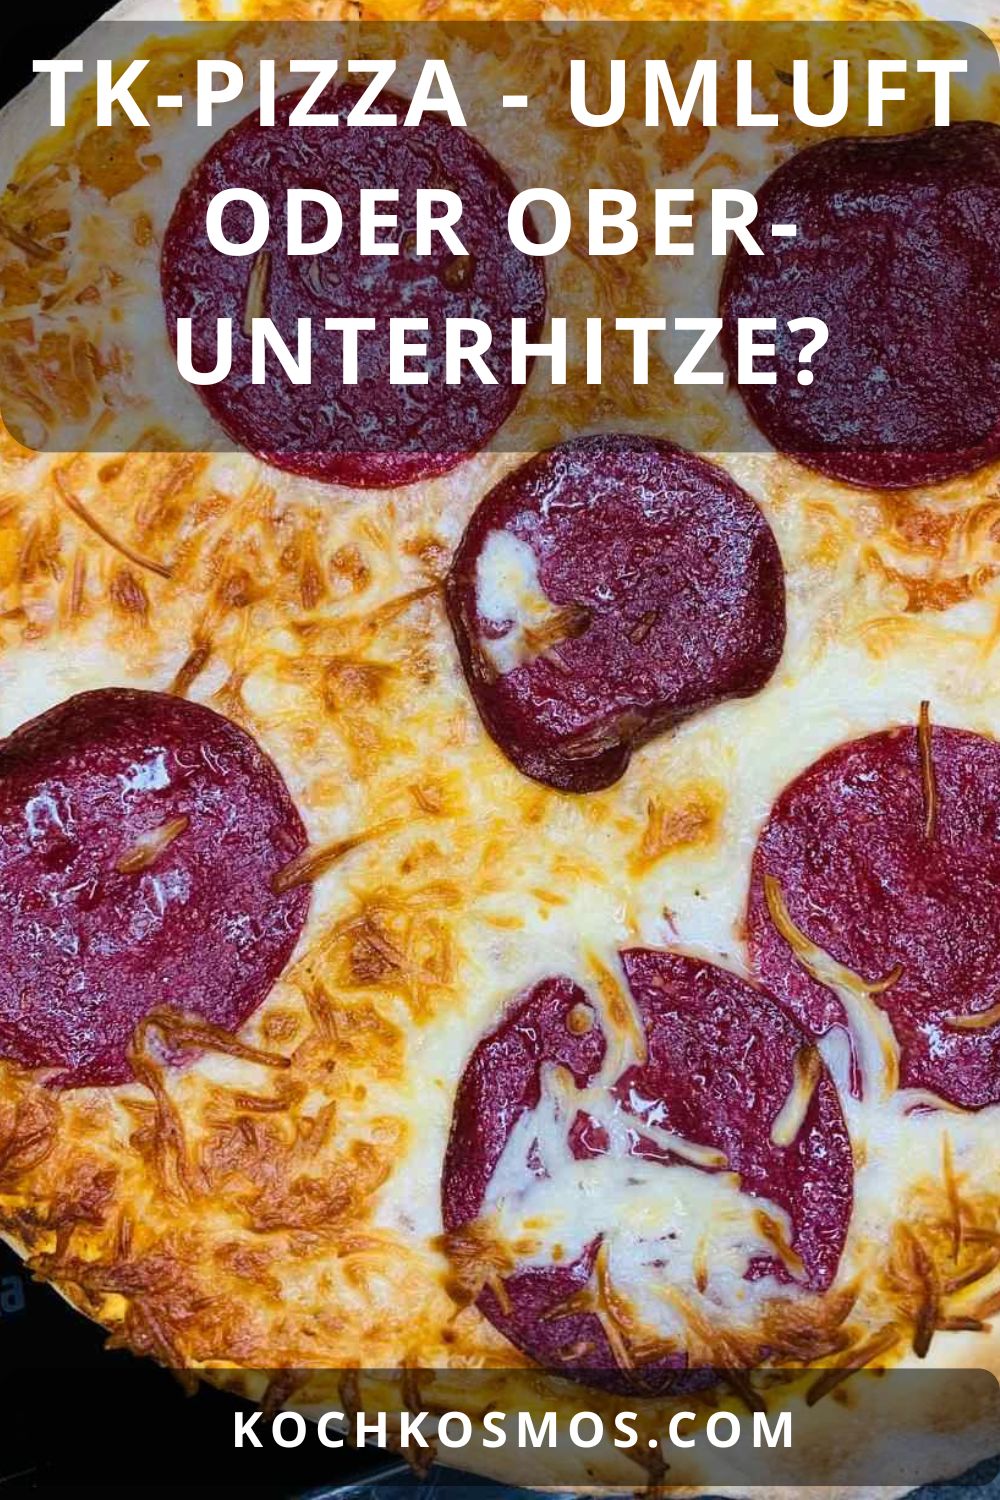 TK-Pizza - Umluft oder Ober- Unterhitze